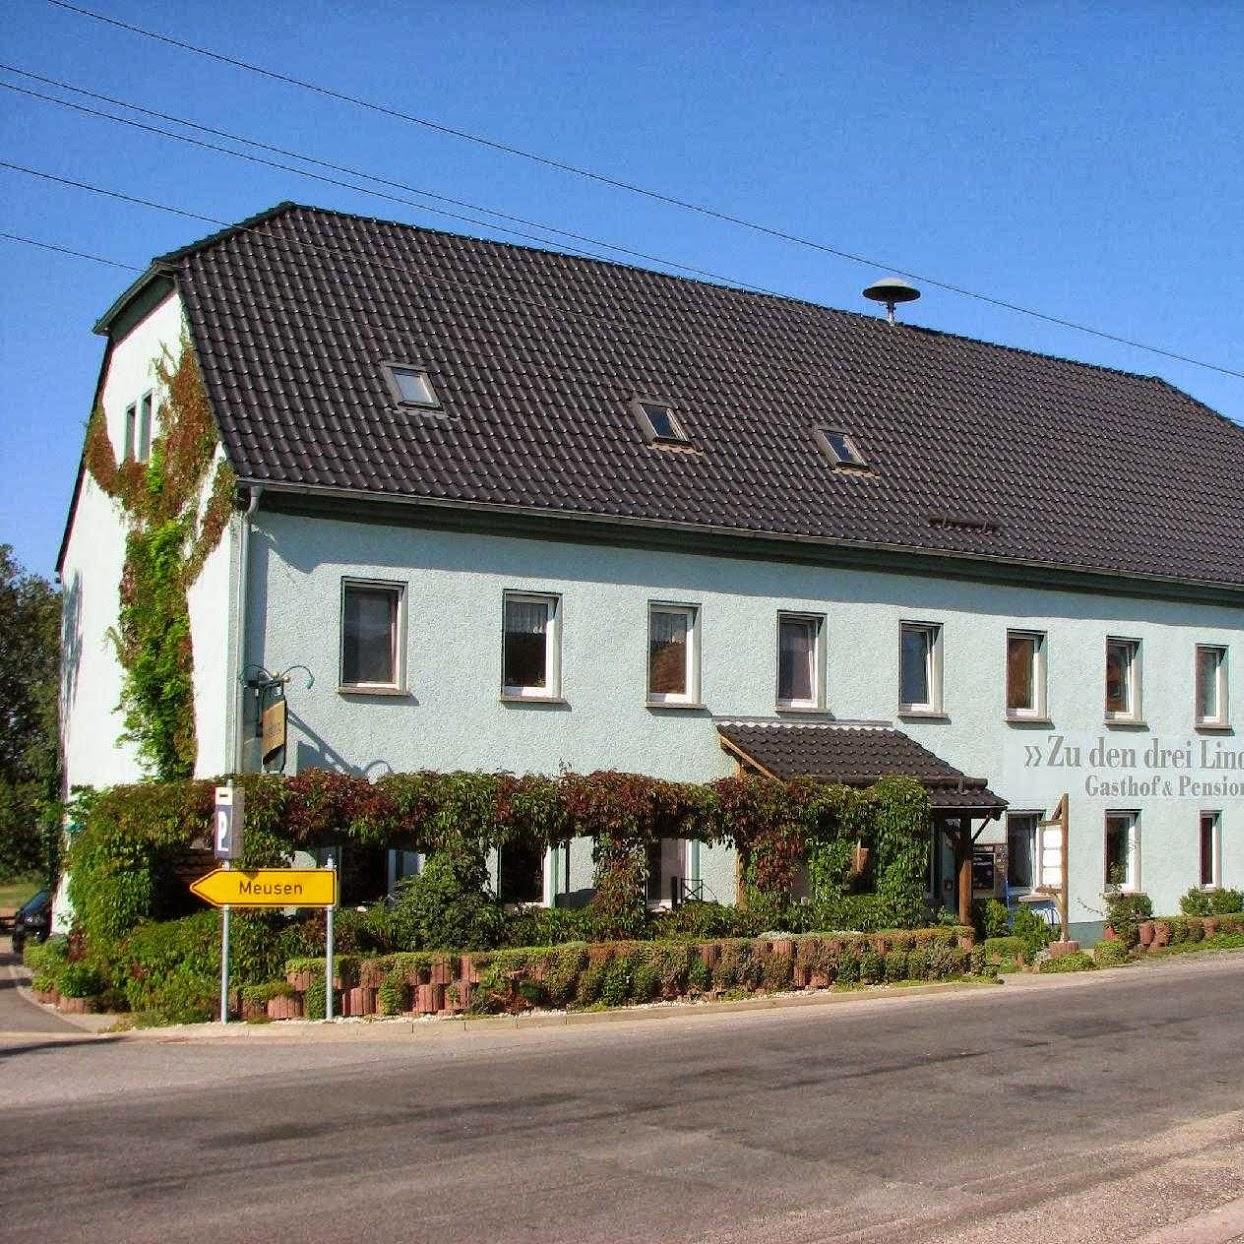 Restaurant "Zu den drei Linden" in Wechselburg